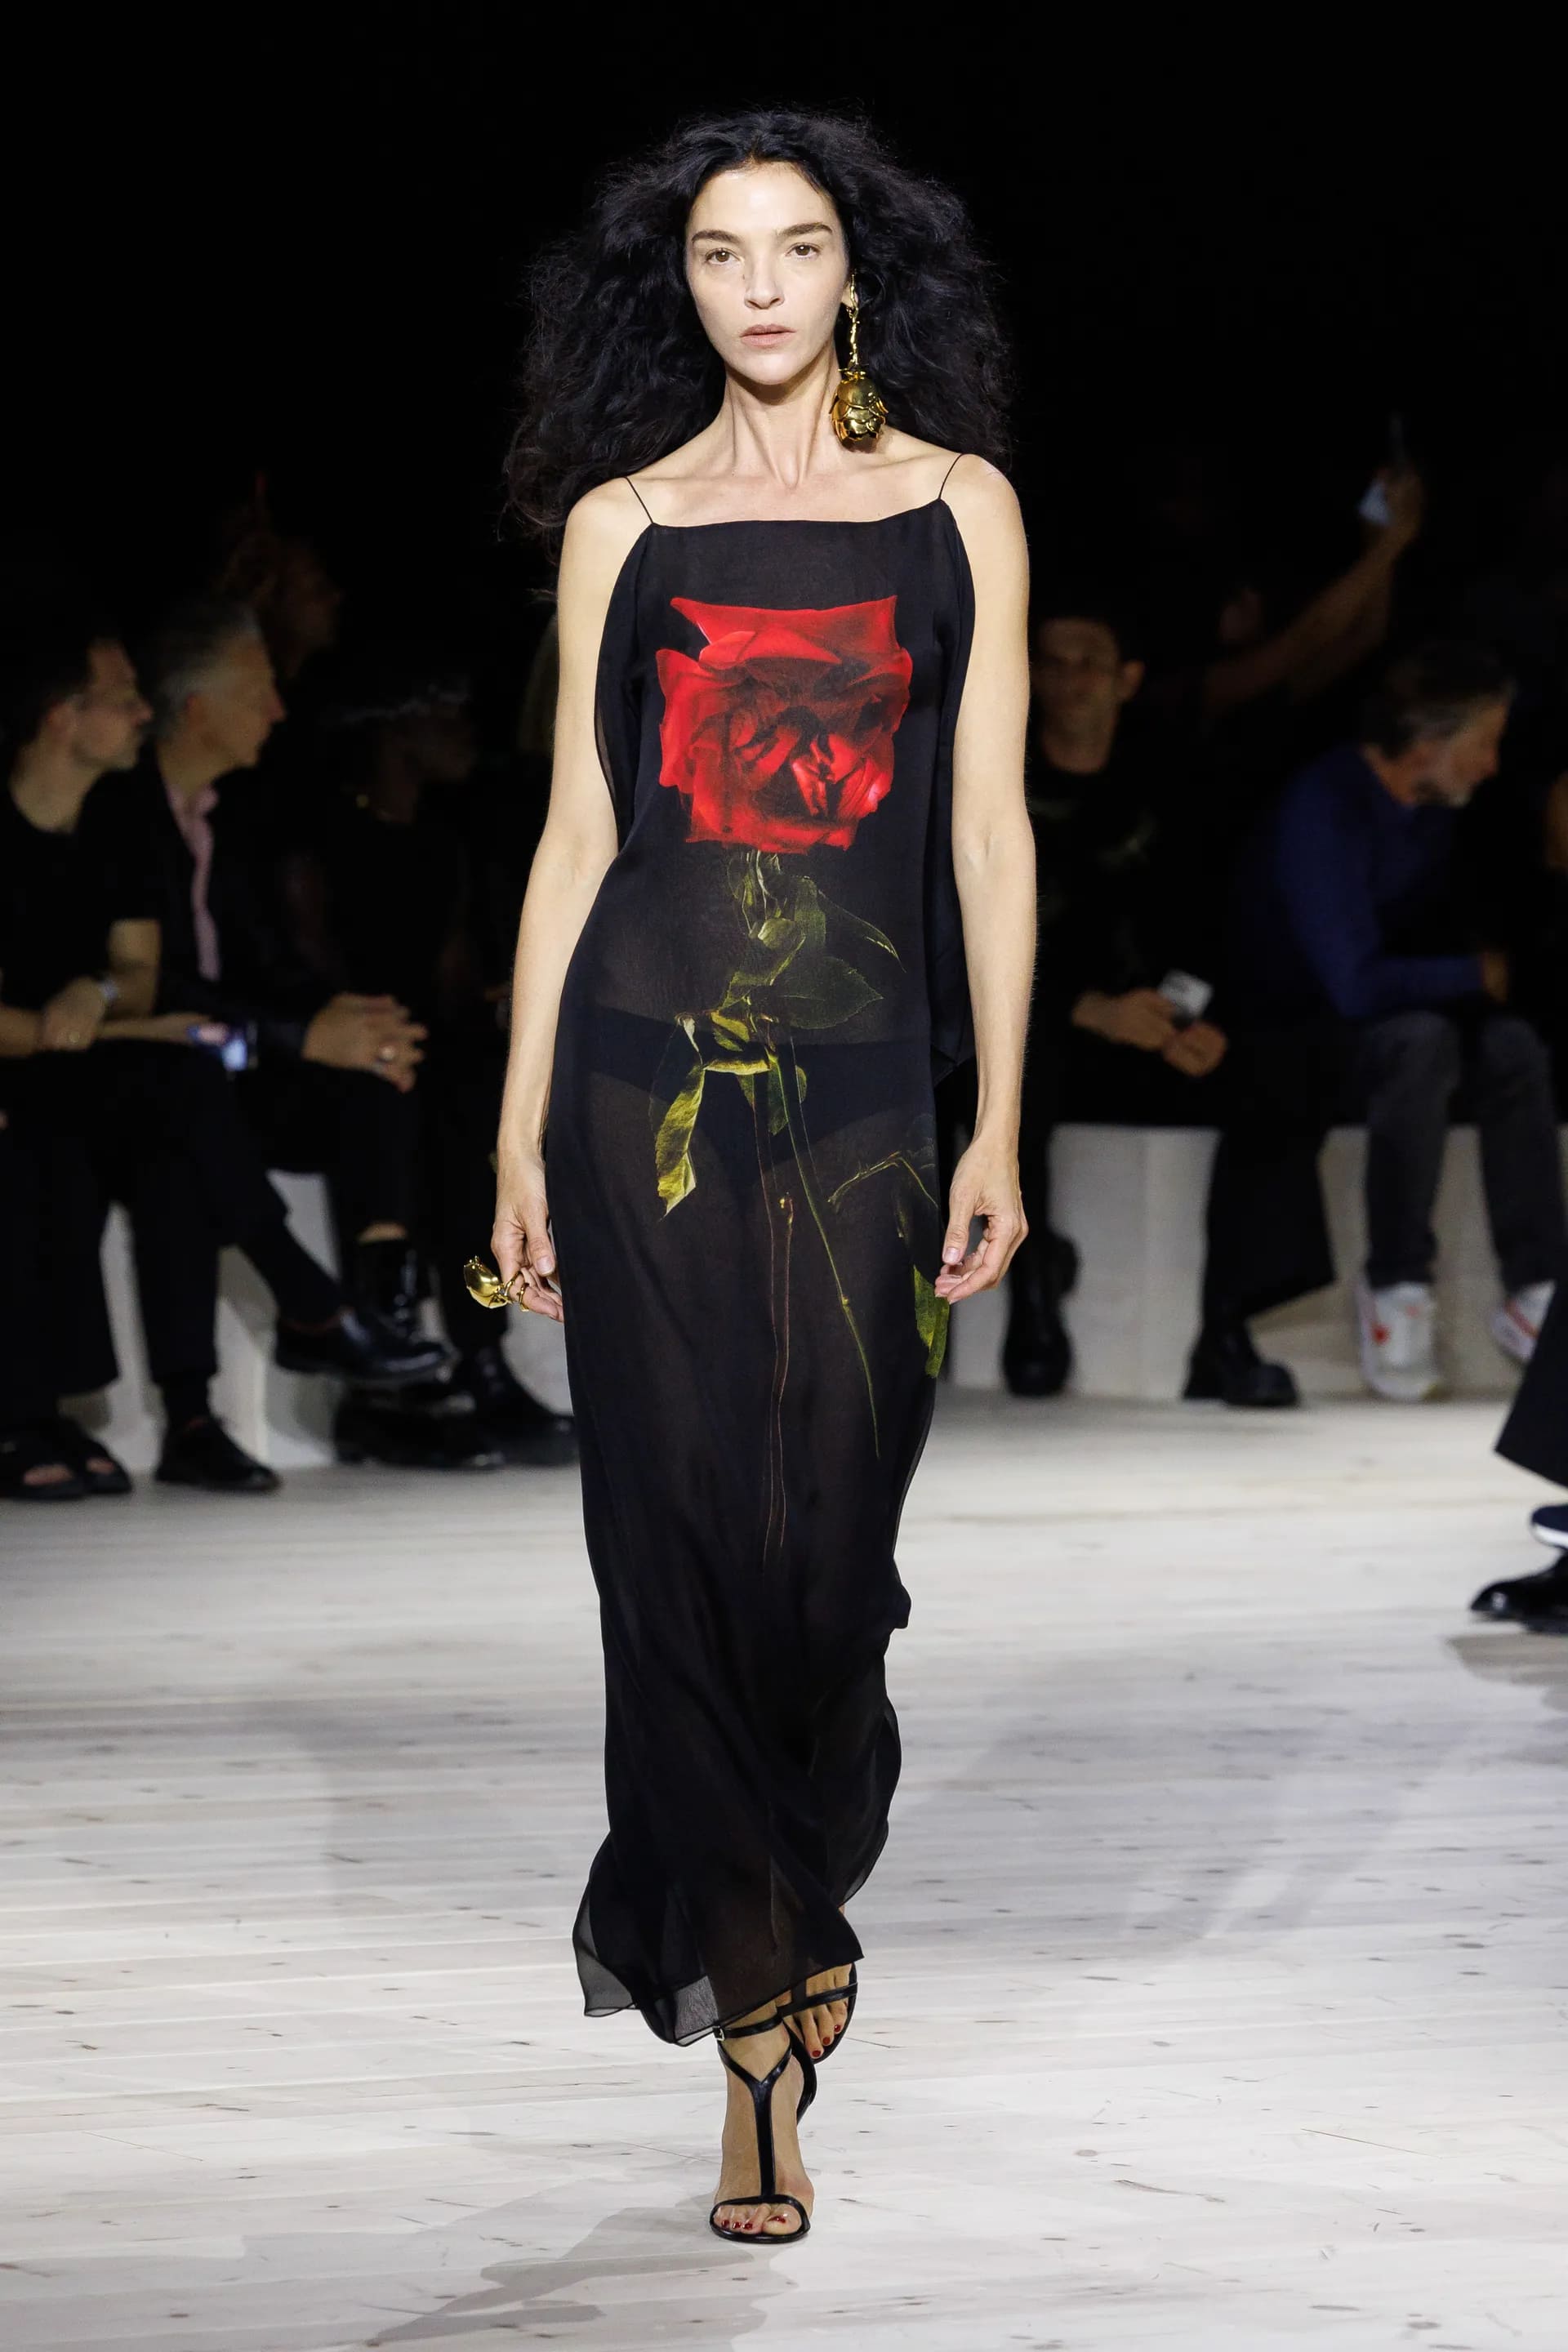  Троянди на сукнях, сиві Хелен Міррен та Енді МакДауелл на подіумі та прощальна колекція Сари Бартон для Alexander McQueen: подробиці Paris Fashion Week - фото 20